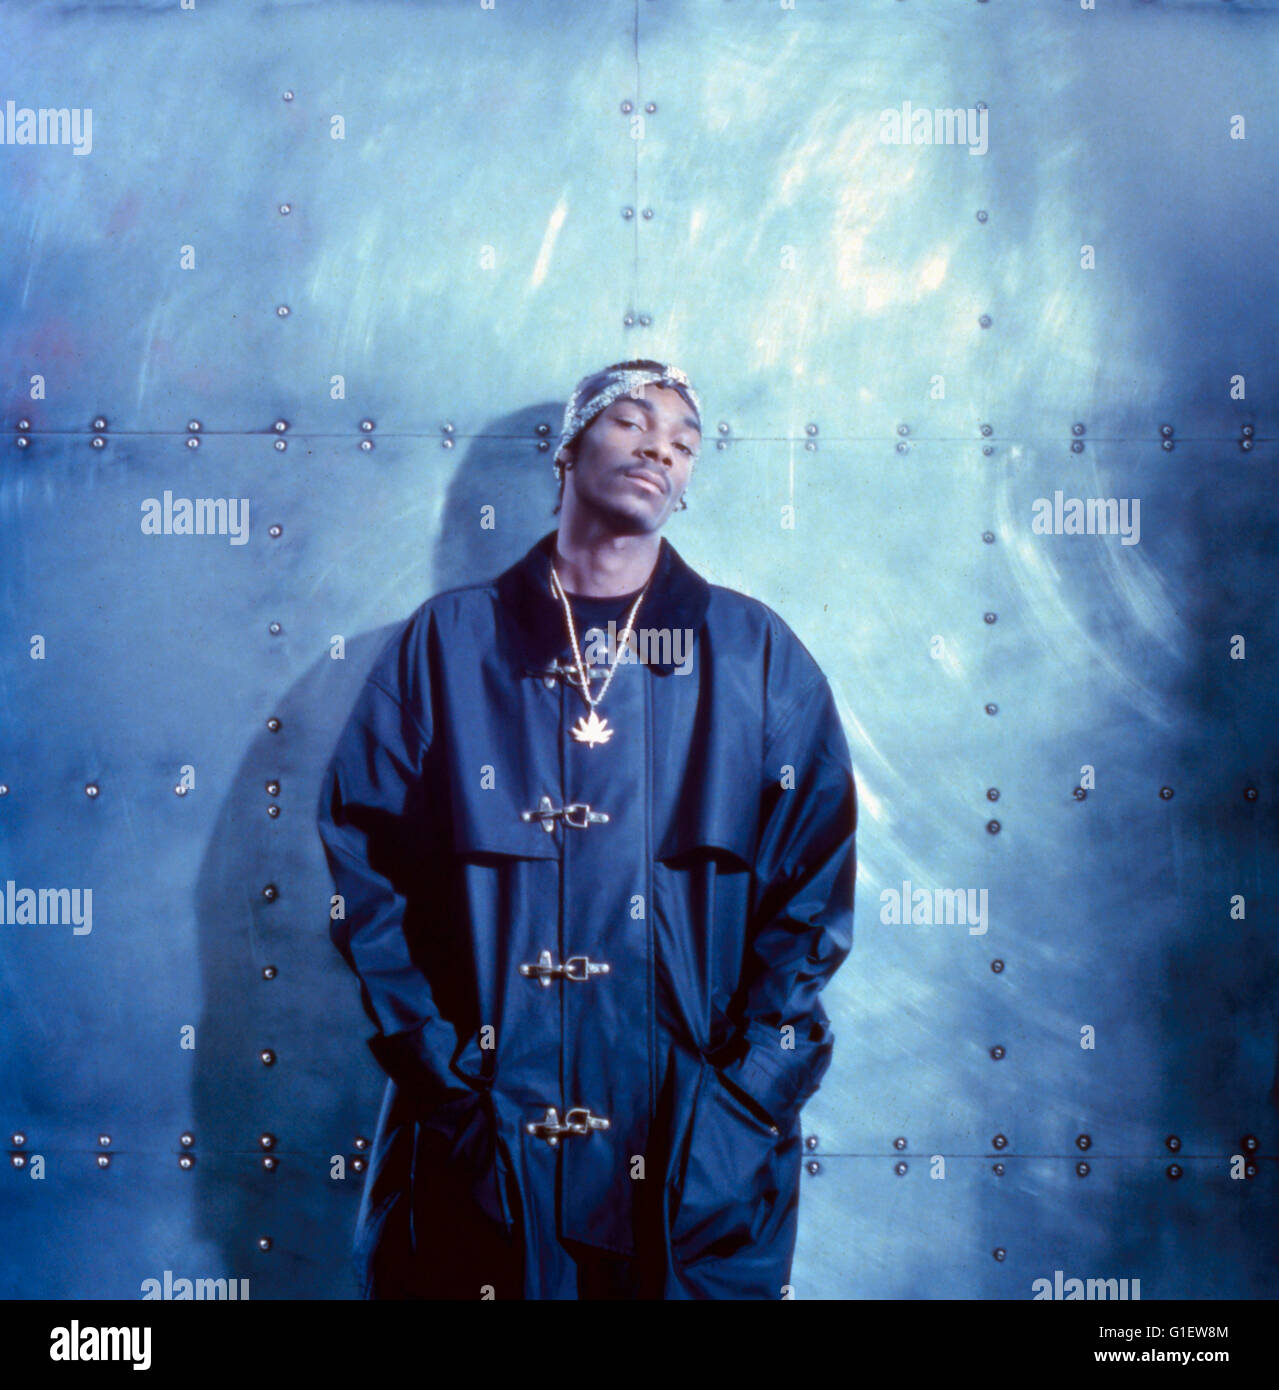 Der amerikanische Rapper, Reggae Musiker und Schauspieler Snoop Doggy Dogg, 1990er Jahre. American rapper, reggae musician and actor Snoop Doggy Dogg, 1990s. Stock Photo